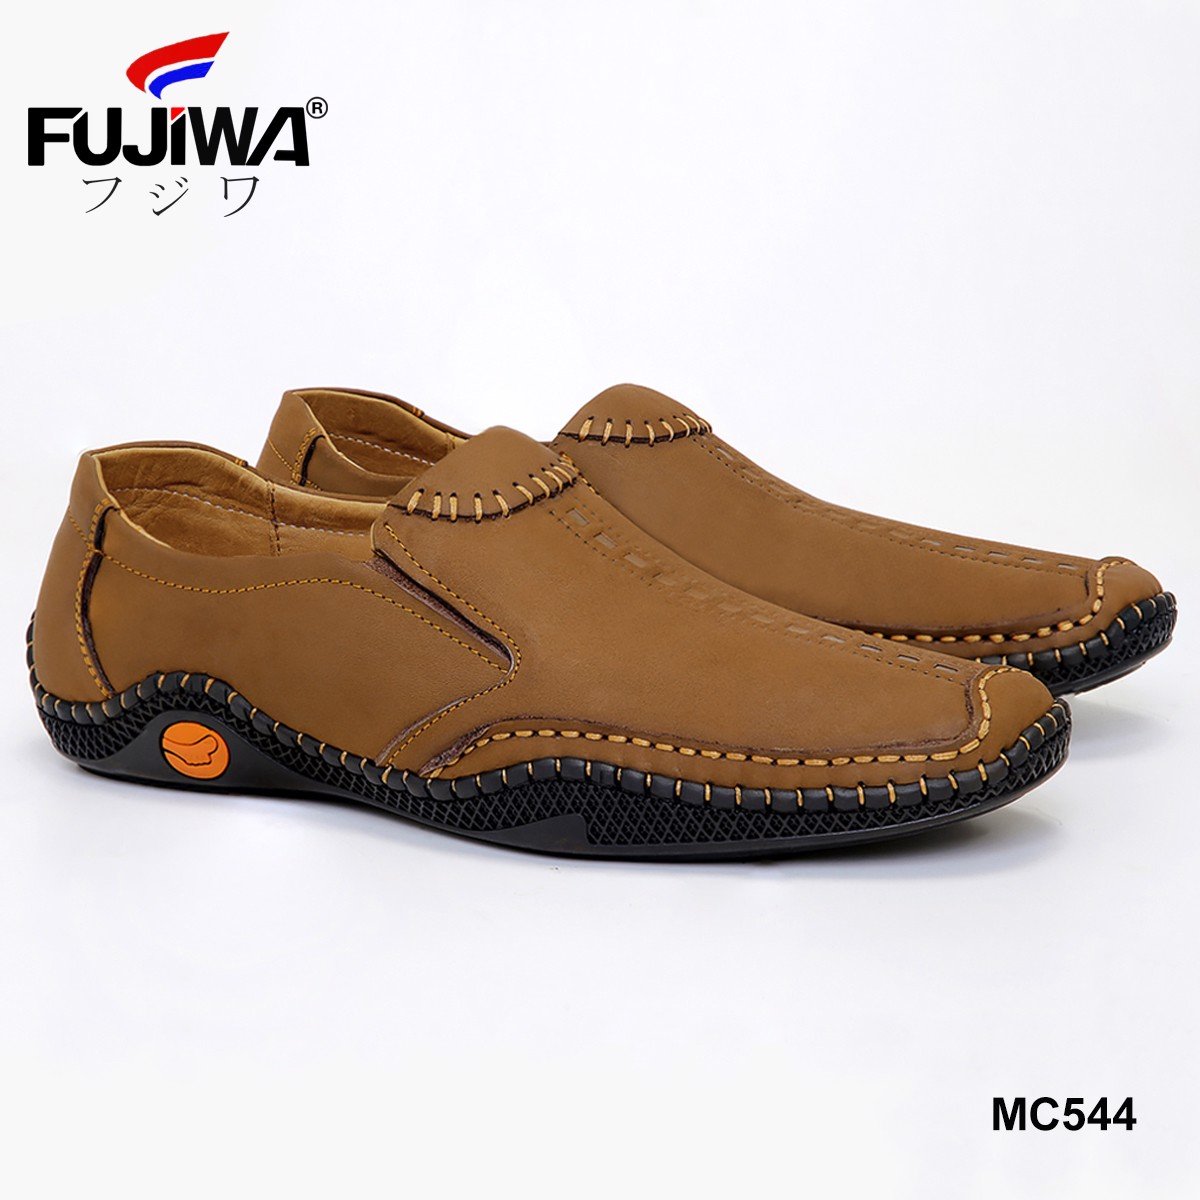 Giày Lười Giày Da Nam Cao Cấp Da Bò Fujiwa - MC544. Da bò cao cấp